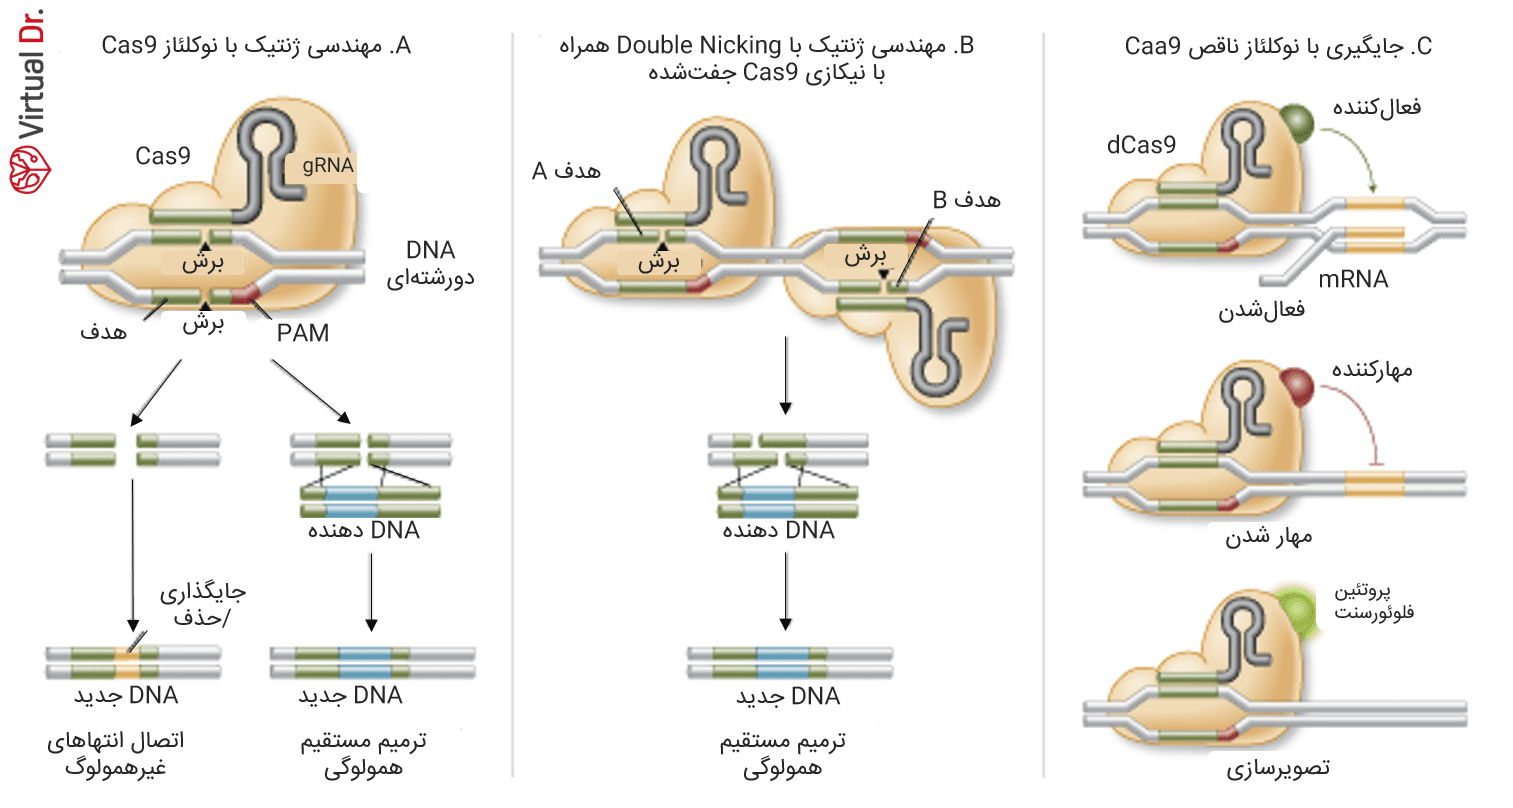 مکان نوکلئازی نوع اولِ آنزیم Cas9 به طور اختصاصی با برش دورشته‌ای از DNA مکانیسم ترمیم شکست دو رشته از آن را فعال می‌کند. در غیاب تمپلیت ترمیمی همولوگ، اتصال انتهای غیرهمولوگ می‌تواند موجب بر هم زدن توالی معنادار DNA شود. متناوباً جهش‌های دقیق و جانشینی می‌تواند توسط تمپلیت ترمیم هومولوگ یا بهره بردن از مسیر ترمیم مستقیم هومولوگی به وجود بیاید. 2.Cas9 جهش‌یافته سایتی می‌سازد مخصوص برای نیک تک رشته‌ای. دو sgRNA می‌تواند برای برشی متقابل در دو رشته مقدمه‌ای باشد، که می‌تواند متحمل ترمیم مستقیم همولوگی شود. 3.Cas9 غیرنوکلئازی (نوع سوم) می‌تواند به دامنه‌ی‌های عامل زیادی متصل شده و جایگاه‌های مختلفی را ایجاد کند. برای مثال فعال‌کننده‌ها و مهارکننده‌های رونویسی و همچنین پروتئین‌های فلوئورسنت 